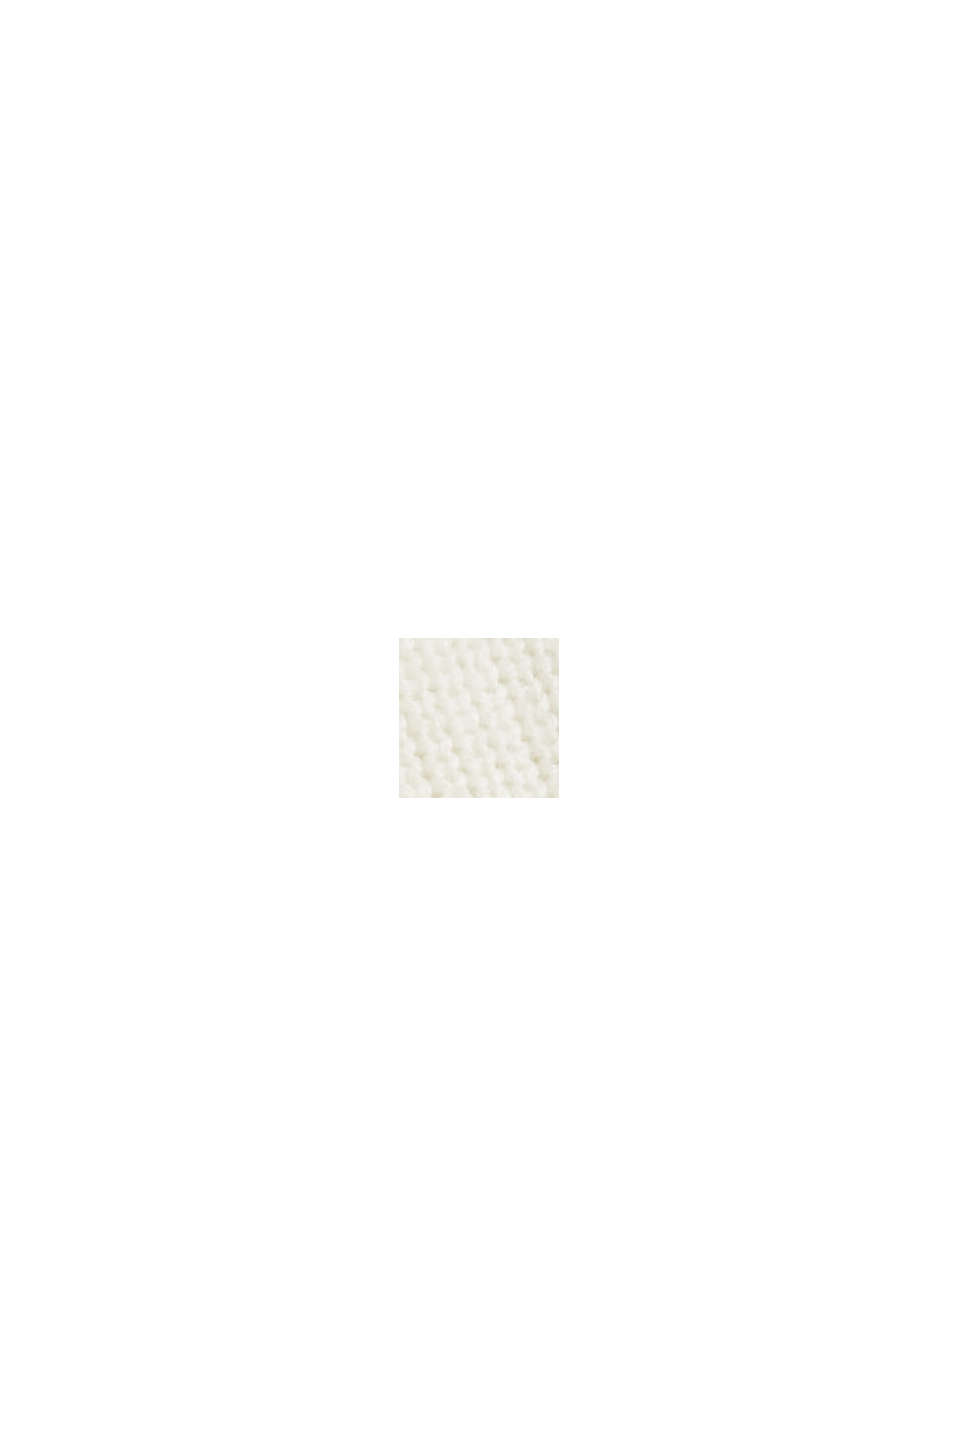 Jersey con cuello de cremallera de lana responsable (RWS), OFF WHITE, swatch